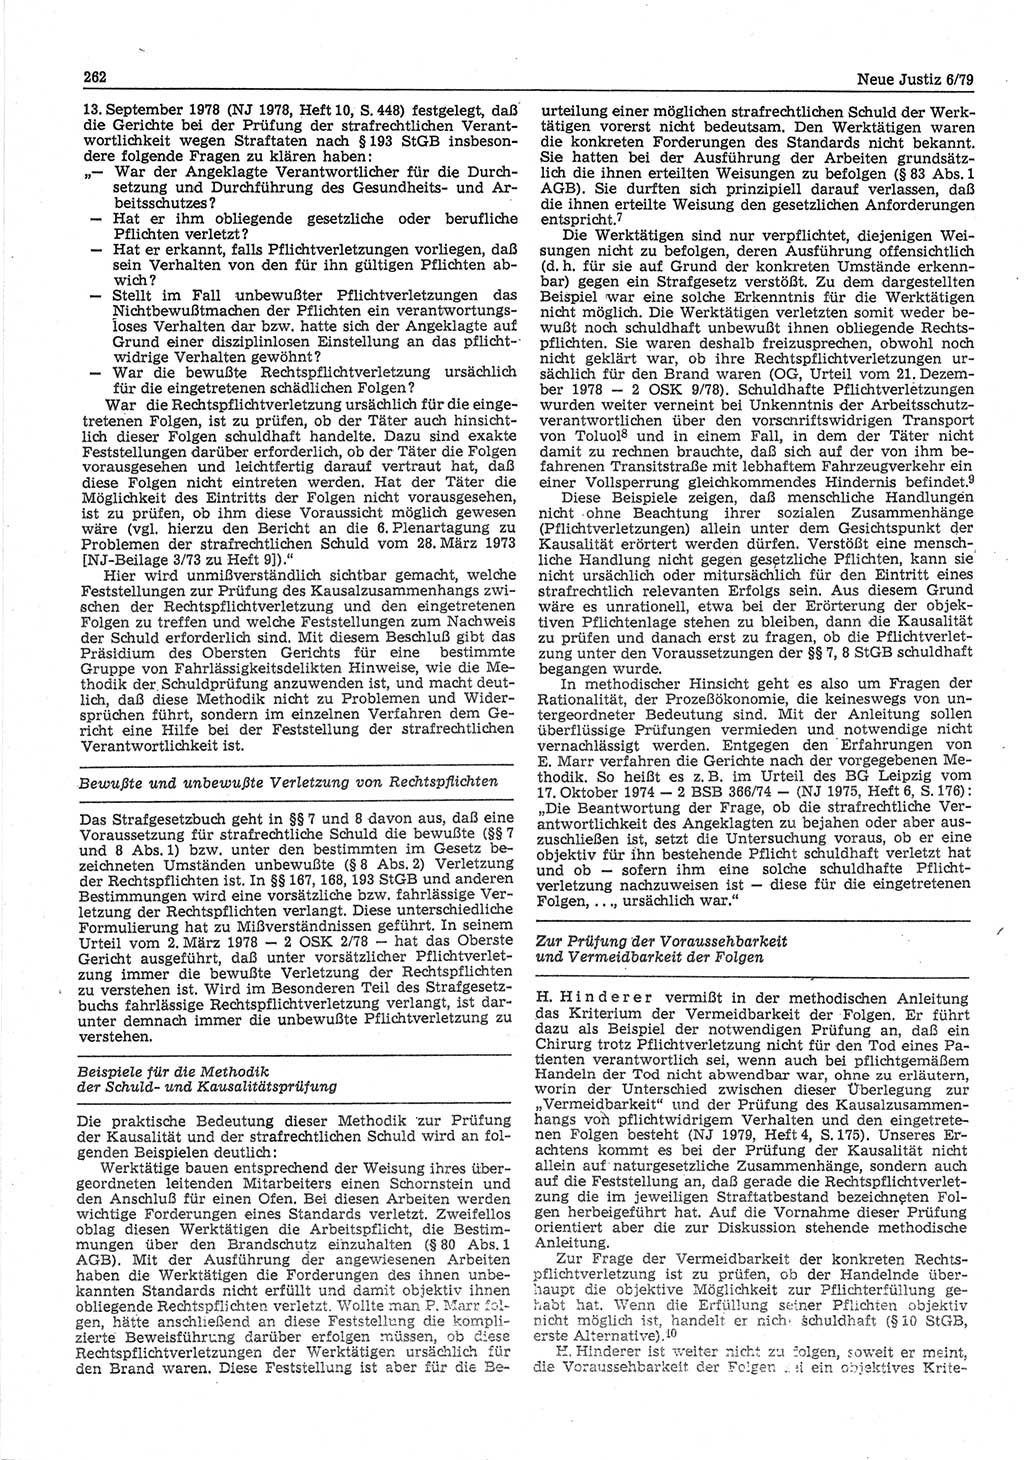 Neue Justiz (NJ), Zeitschrift für sozialistisches Recht und Gesetzlichkeit [Deutsche Demokratische Republik (DDR)], 33. Jahrgang 1979, Seite 262 (NJ DDR 1979, S. 262)